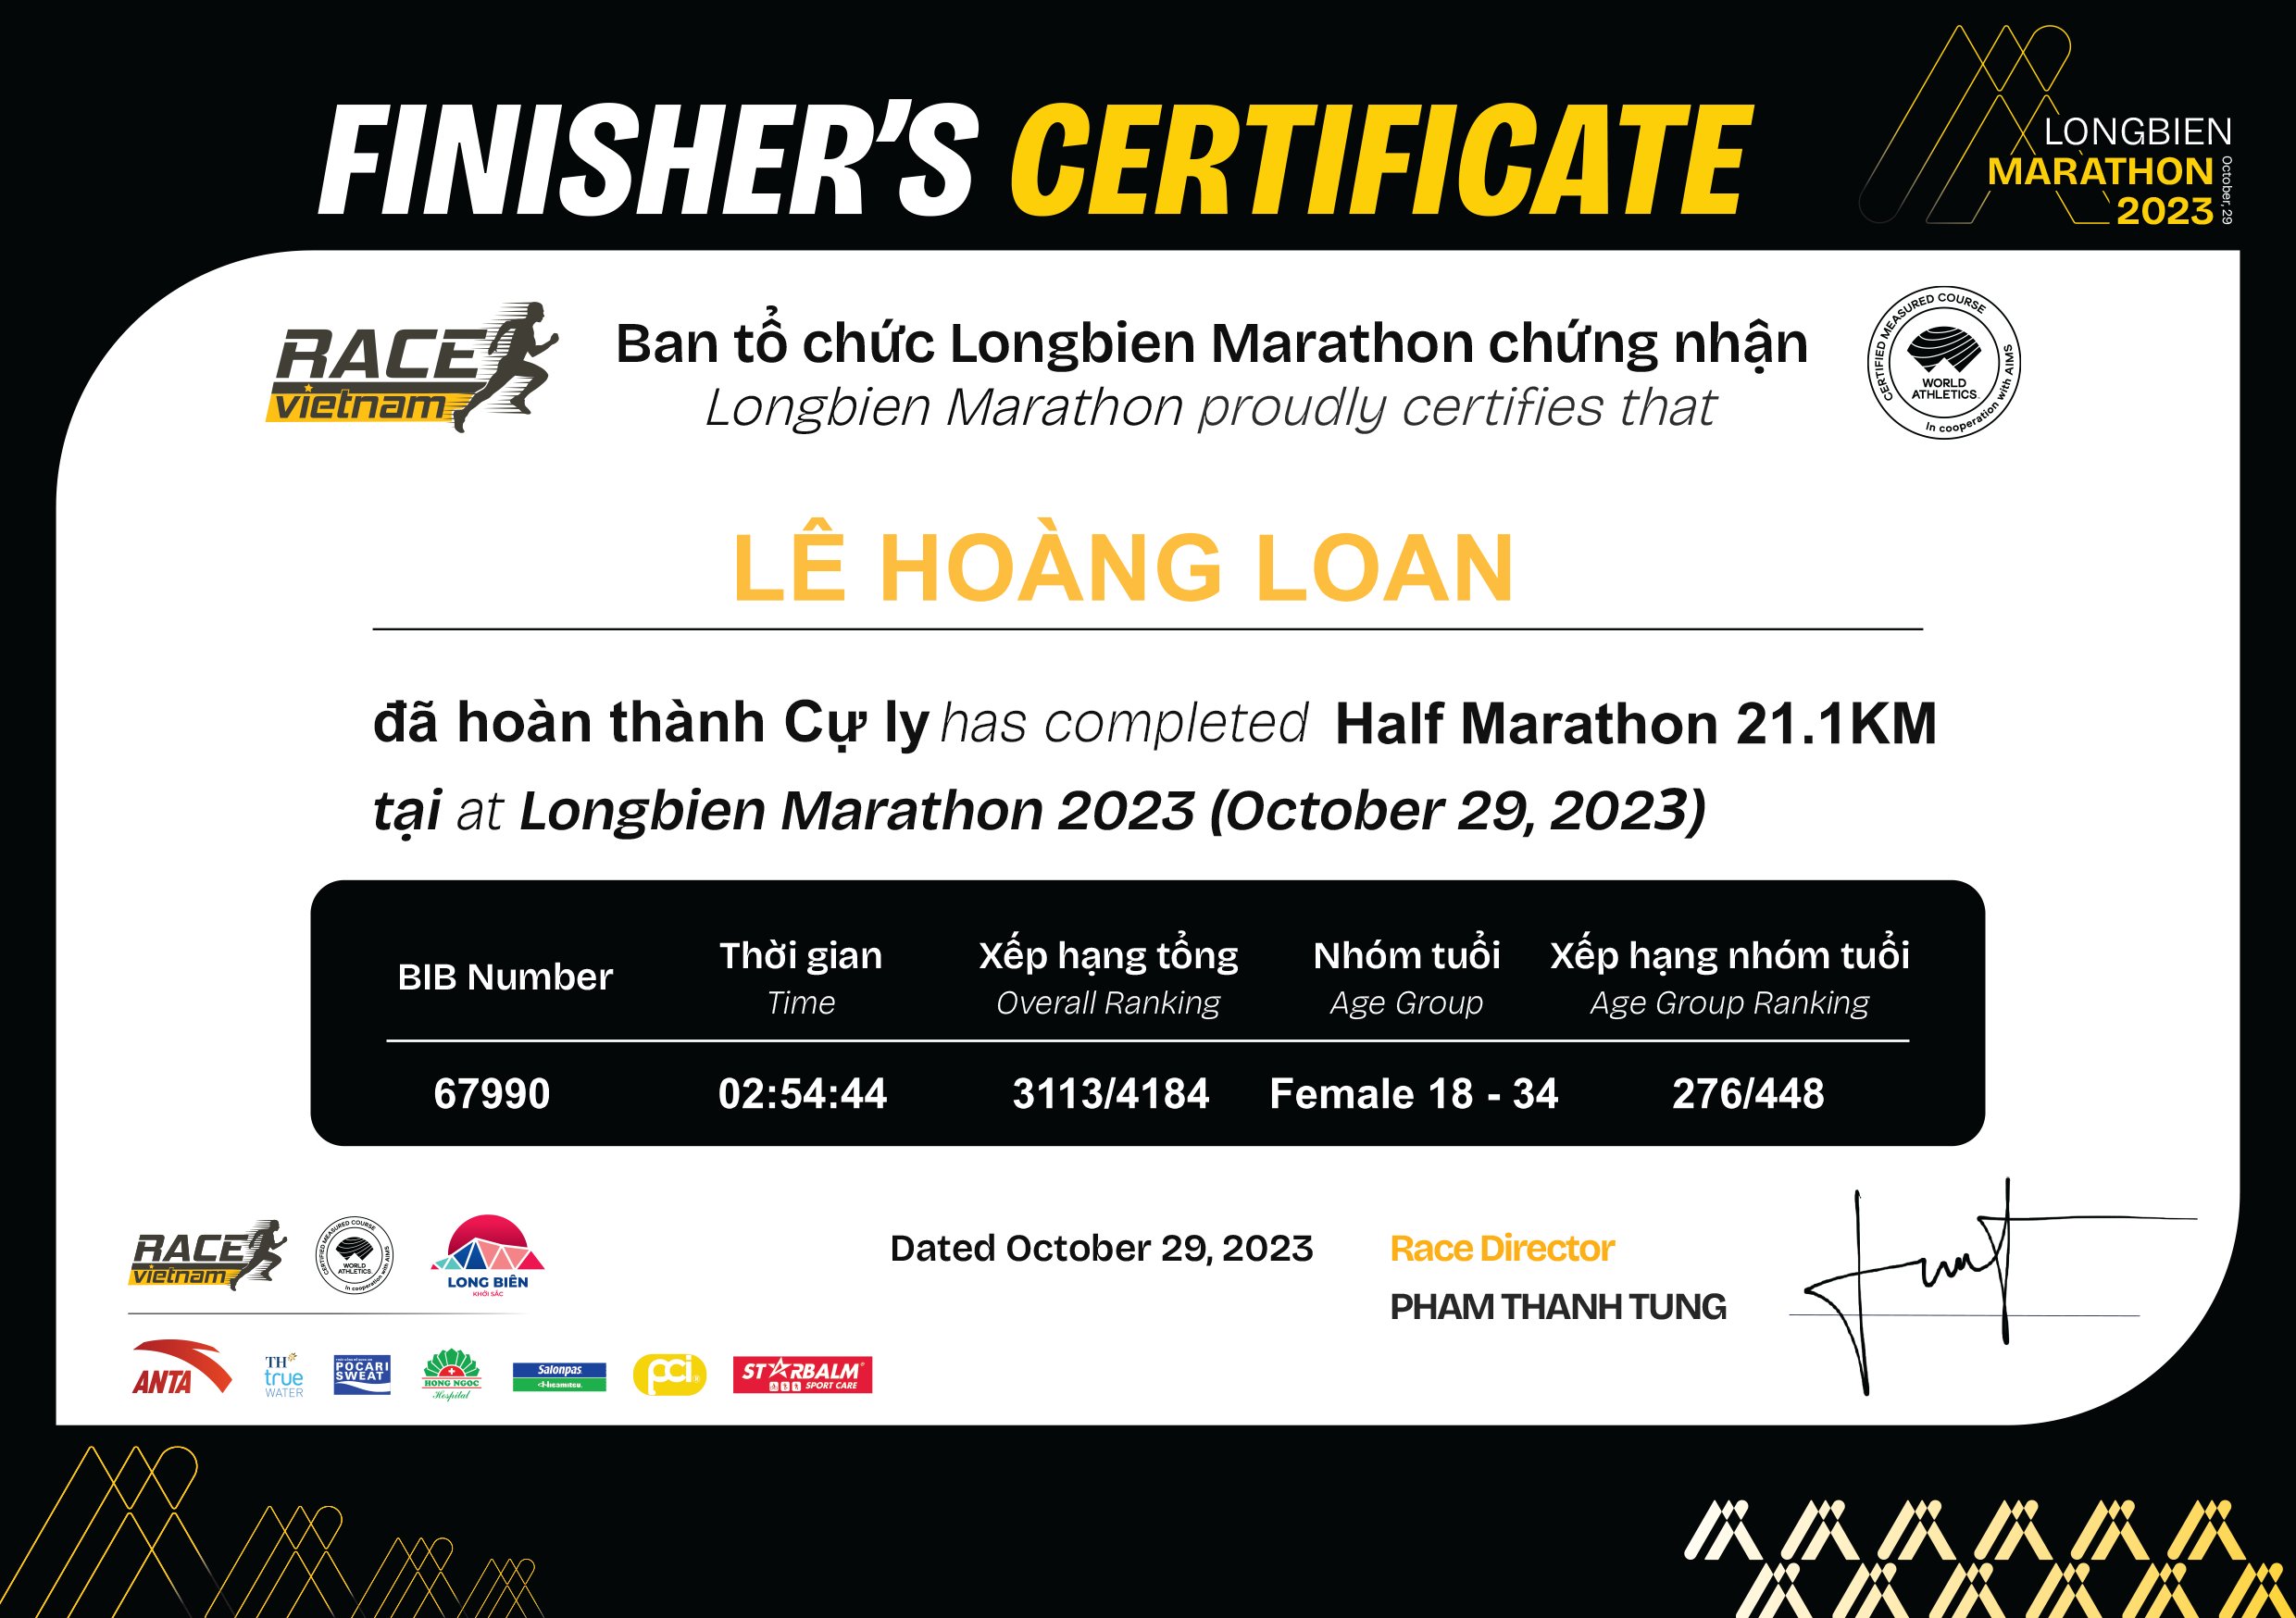 67990 - Lê Hoàng Loan